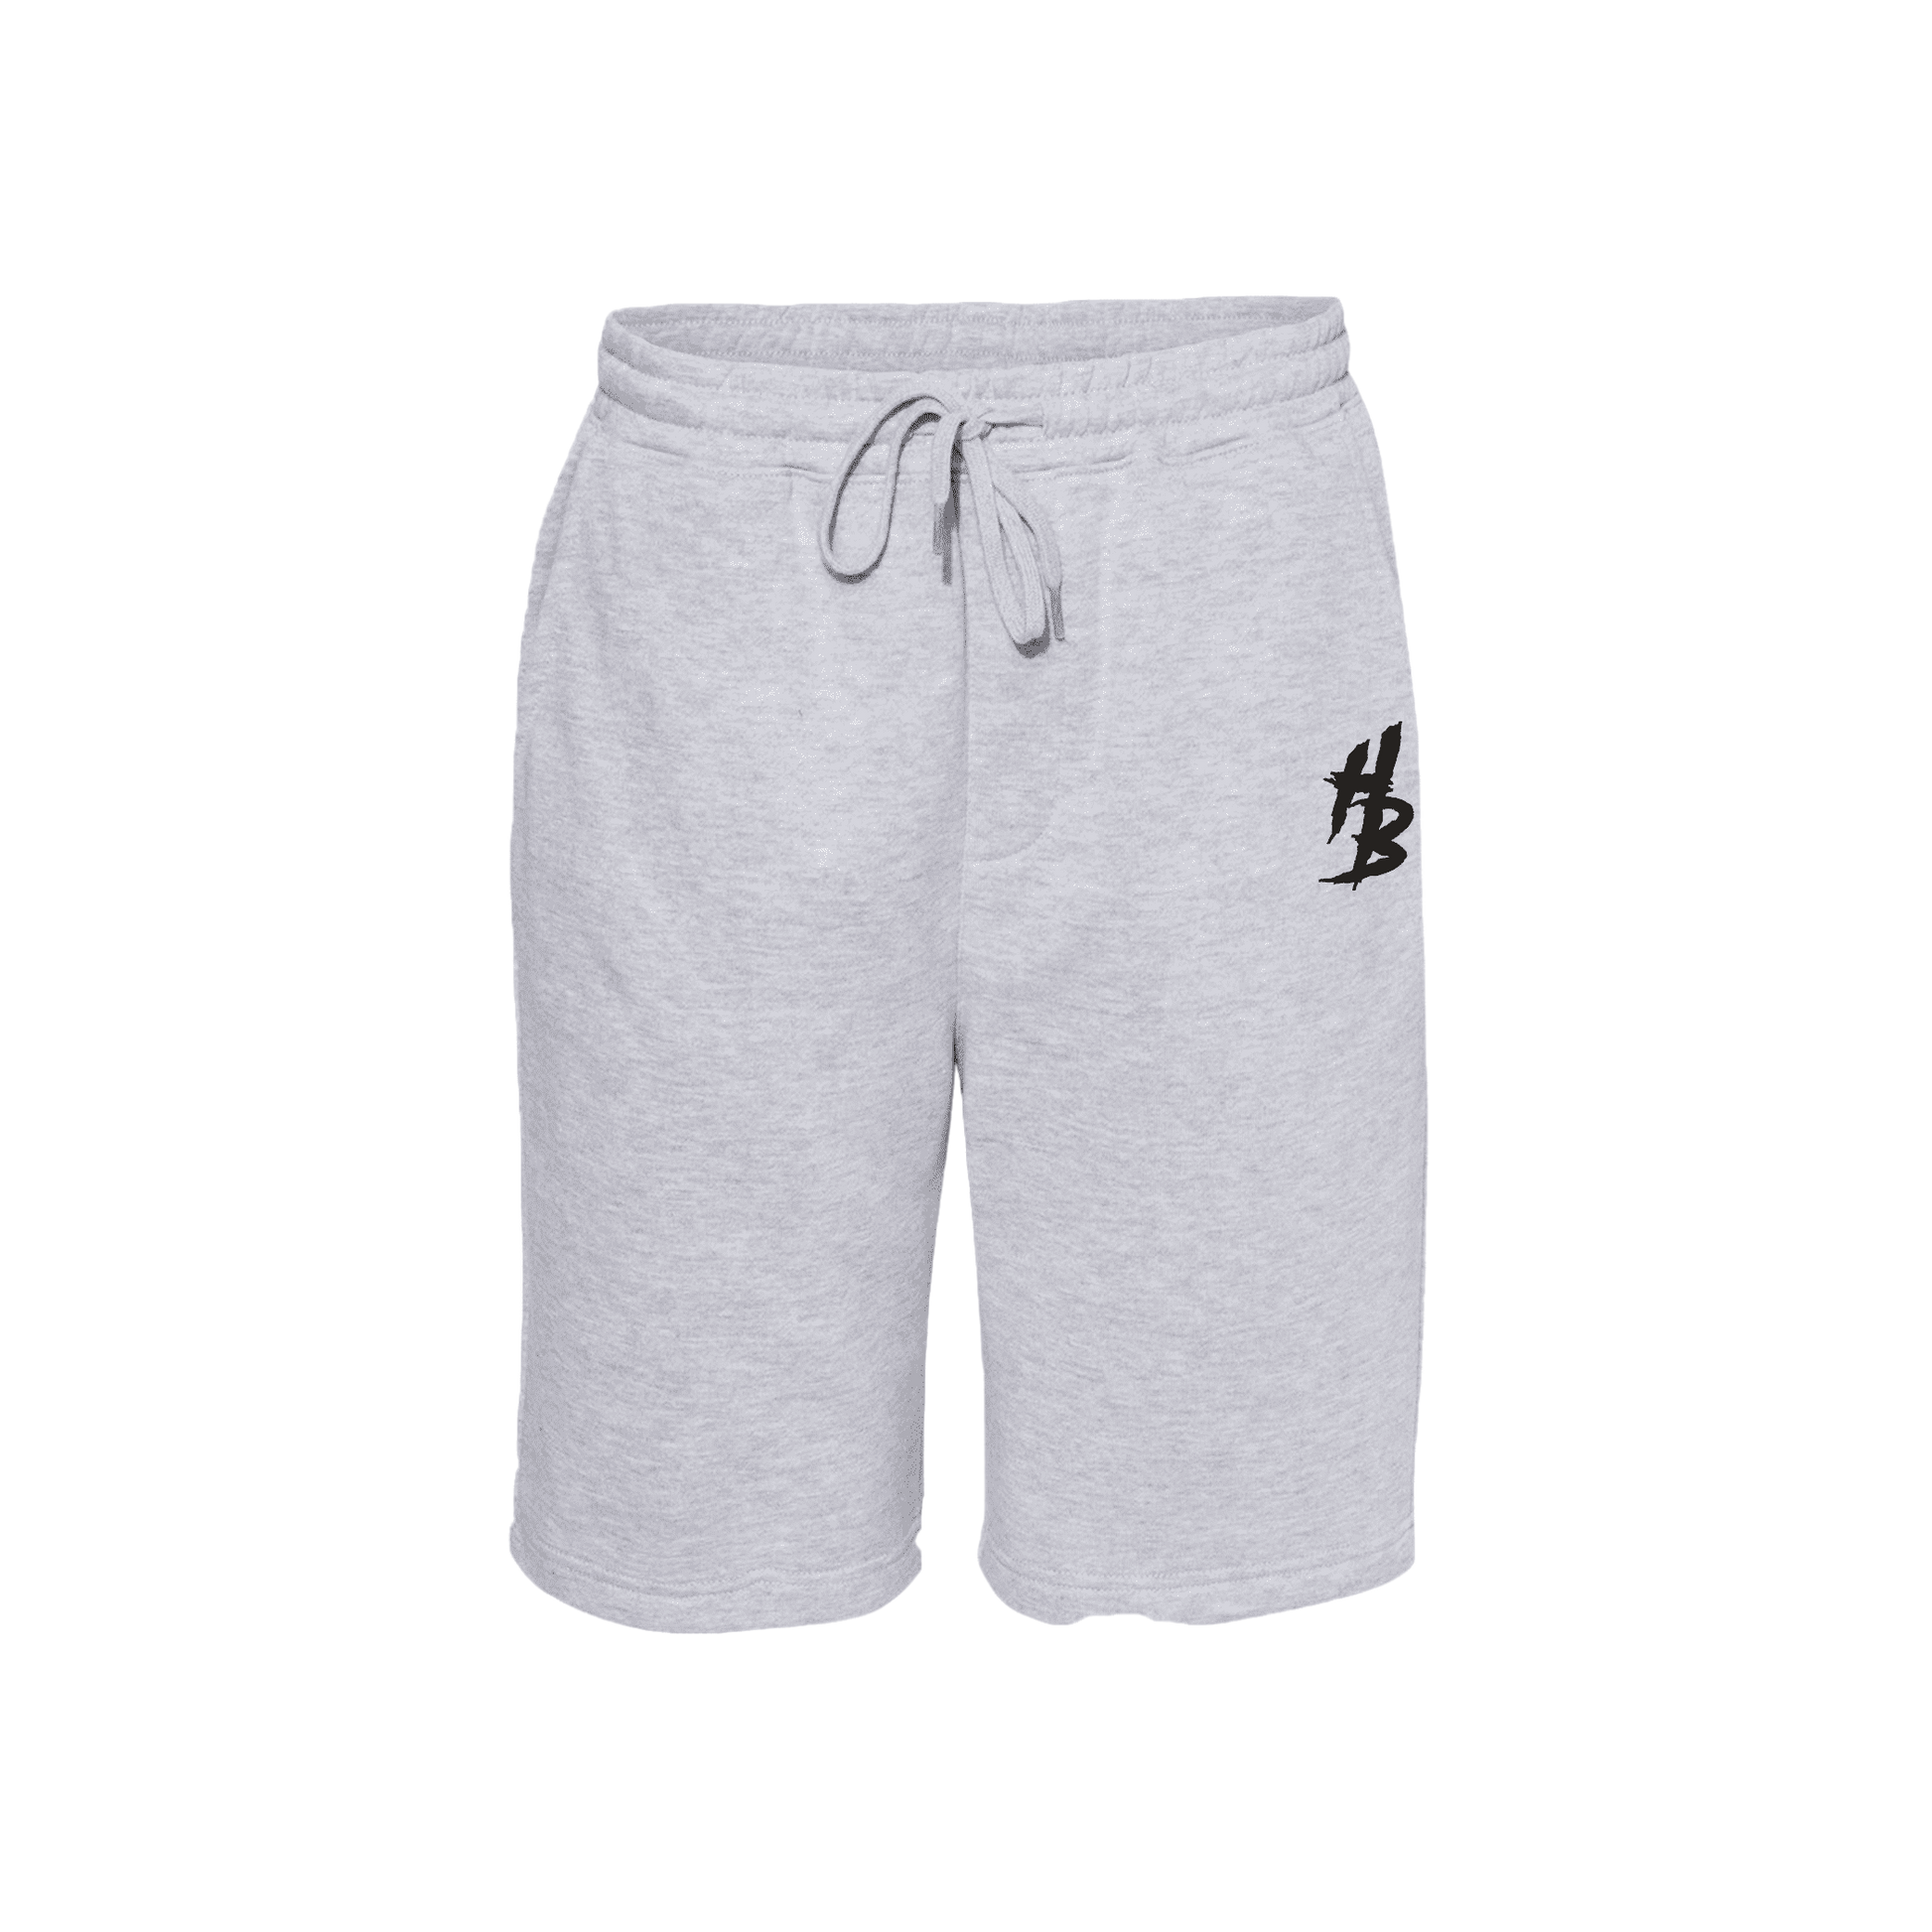 HB Grey Shorts - hdlm.brgnd